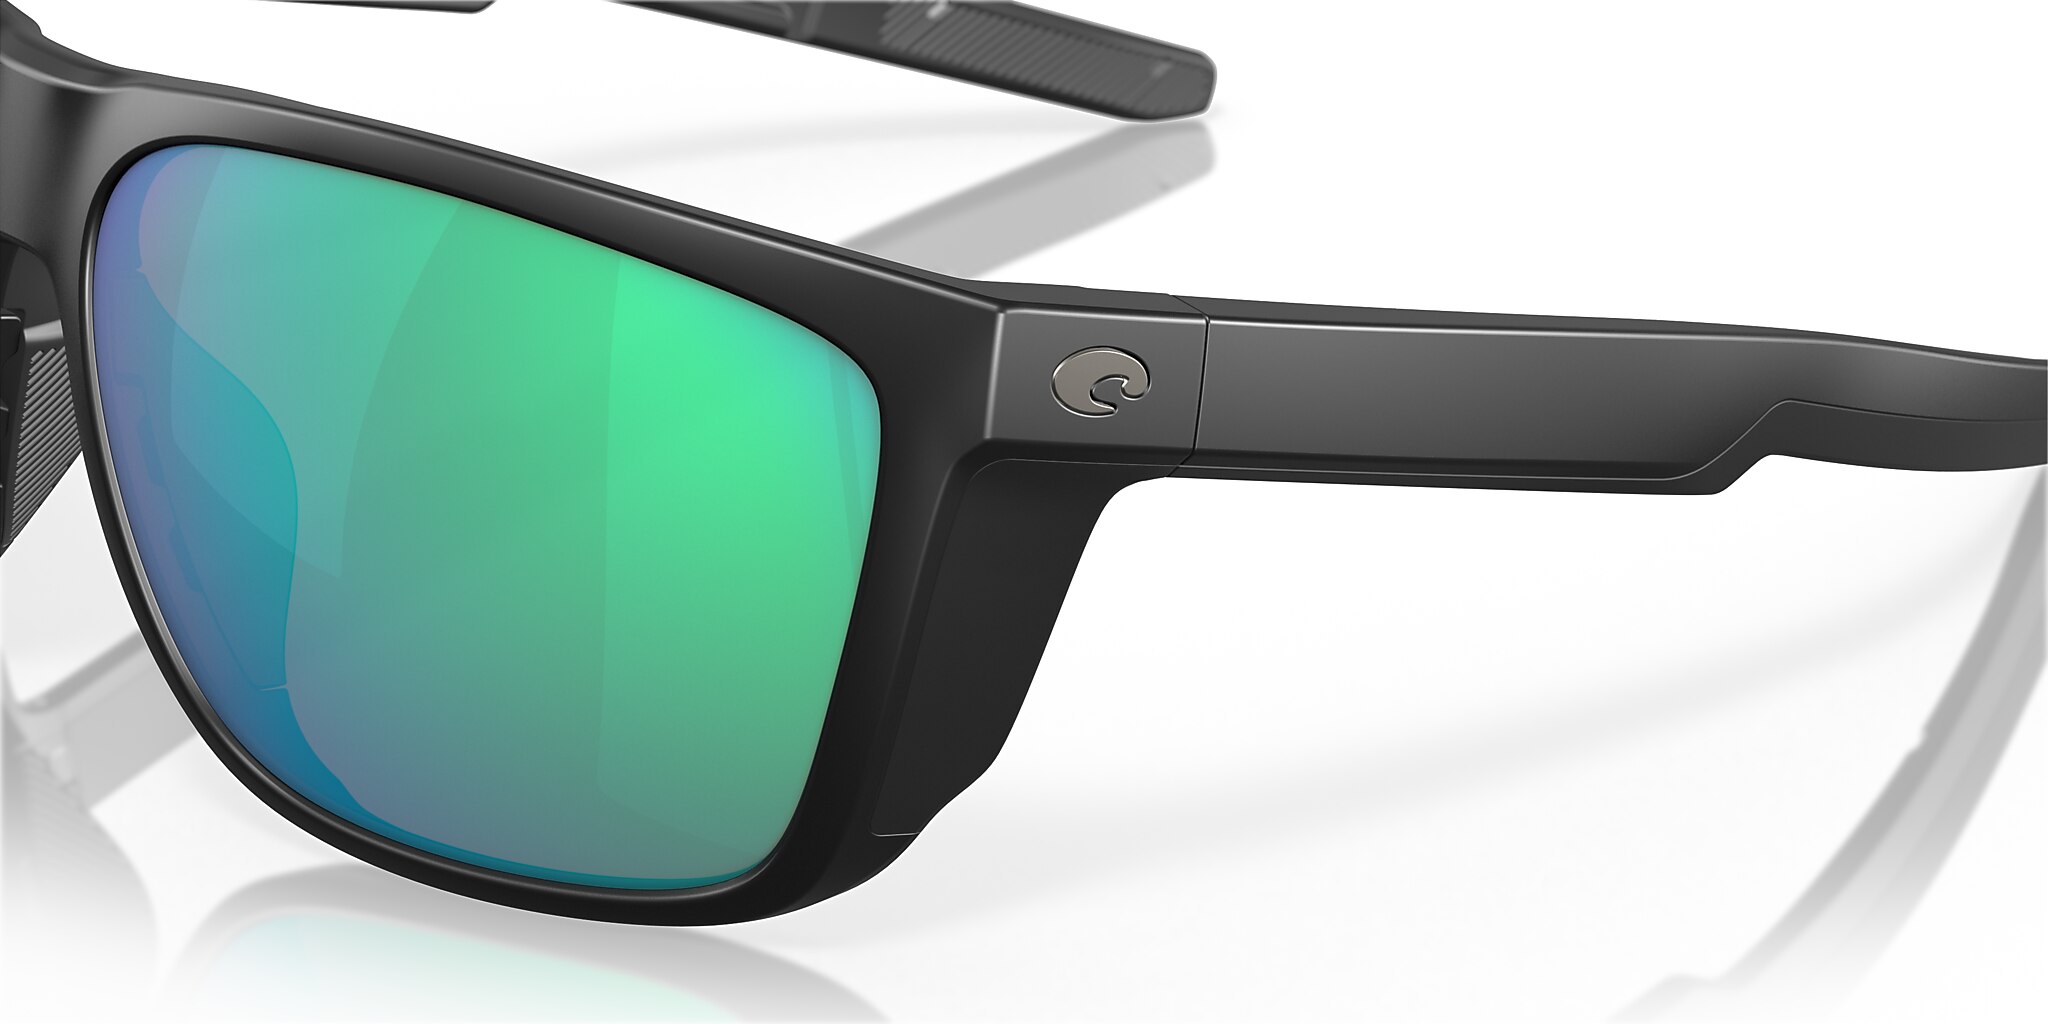 Ferg XL Polarized Sunglasses in Green Mirror | Costa Del Mar®